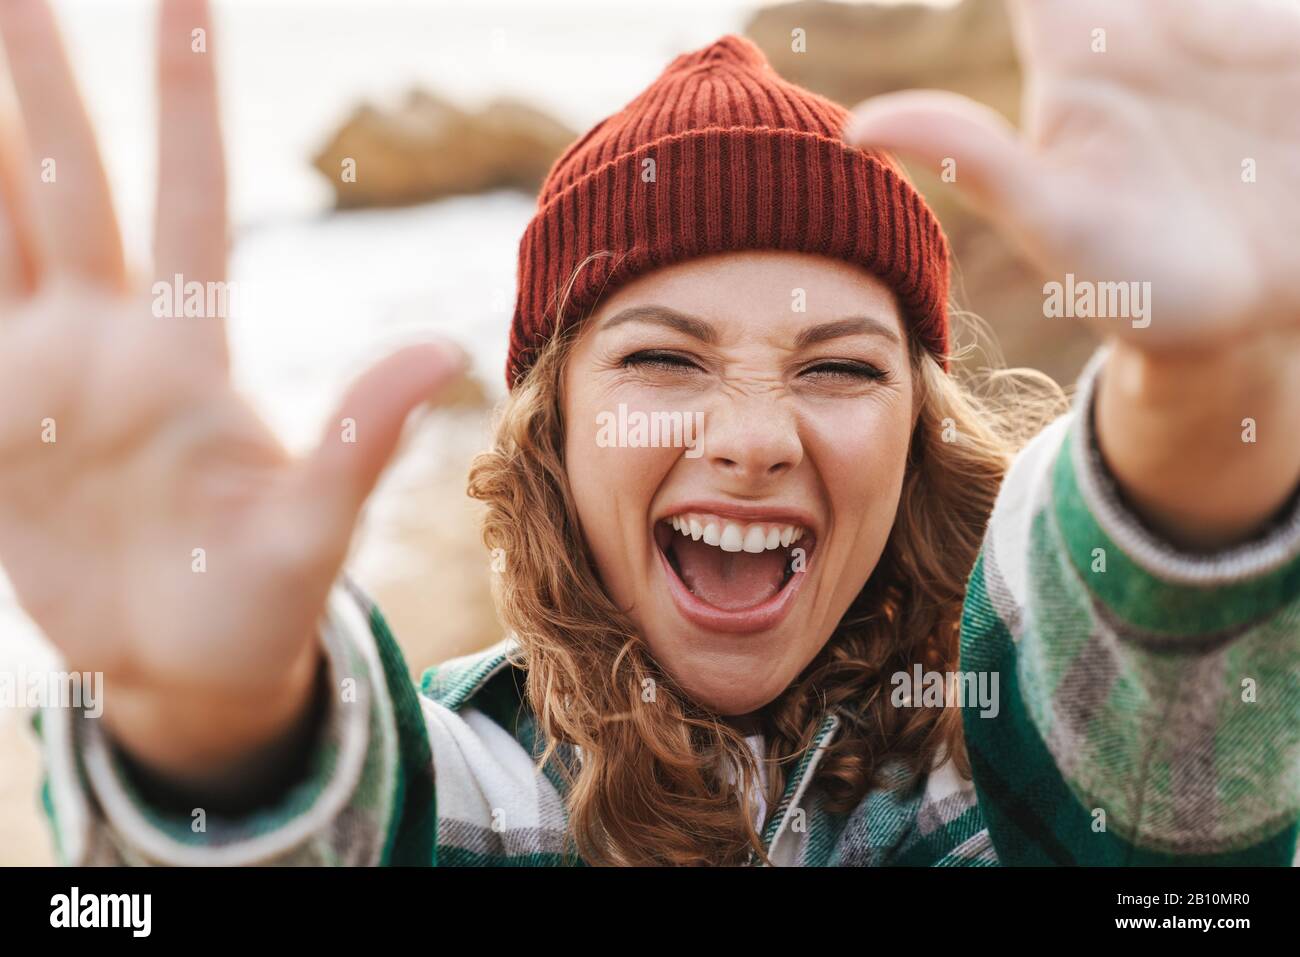 Bild der freudigen jungen kaukasischen Frau, die Hut und ein Plaid Hemd trägt, das die Hände bei der Kamera erreicht, während sie im Freien spazieren geht Stockfoto